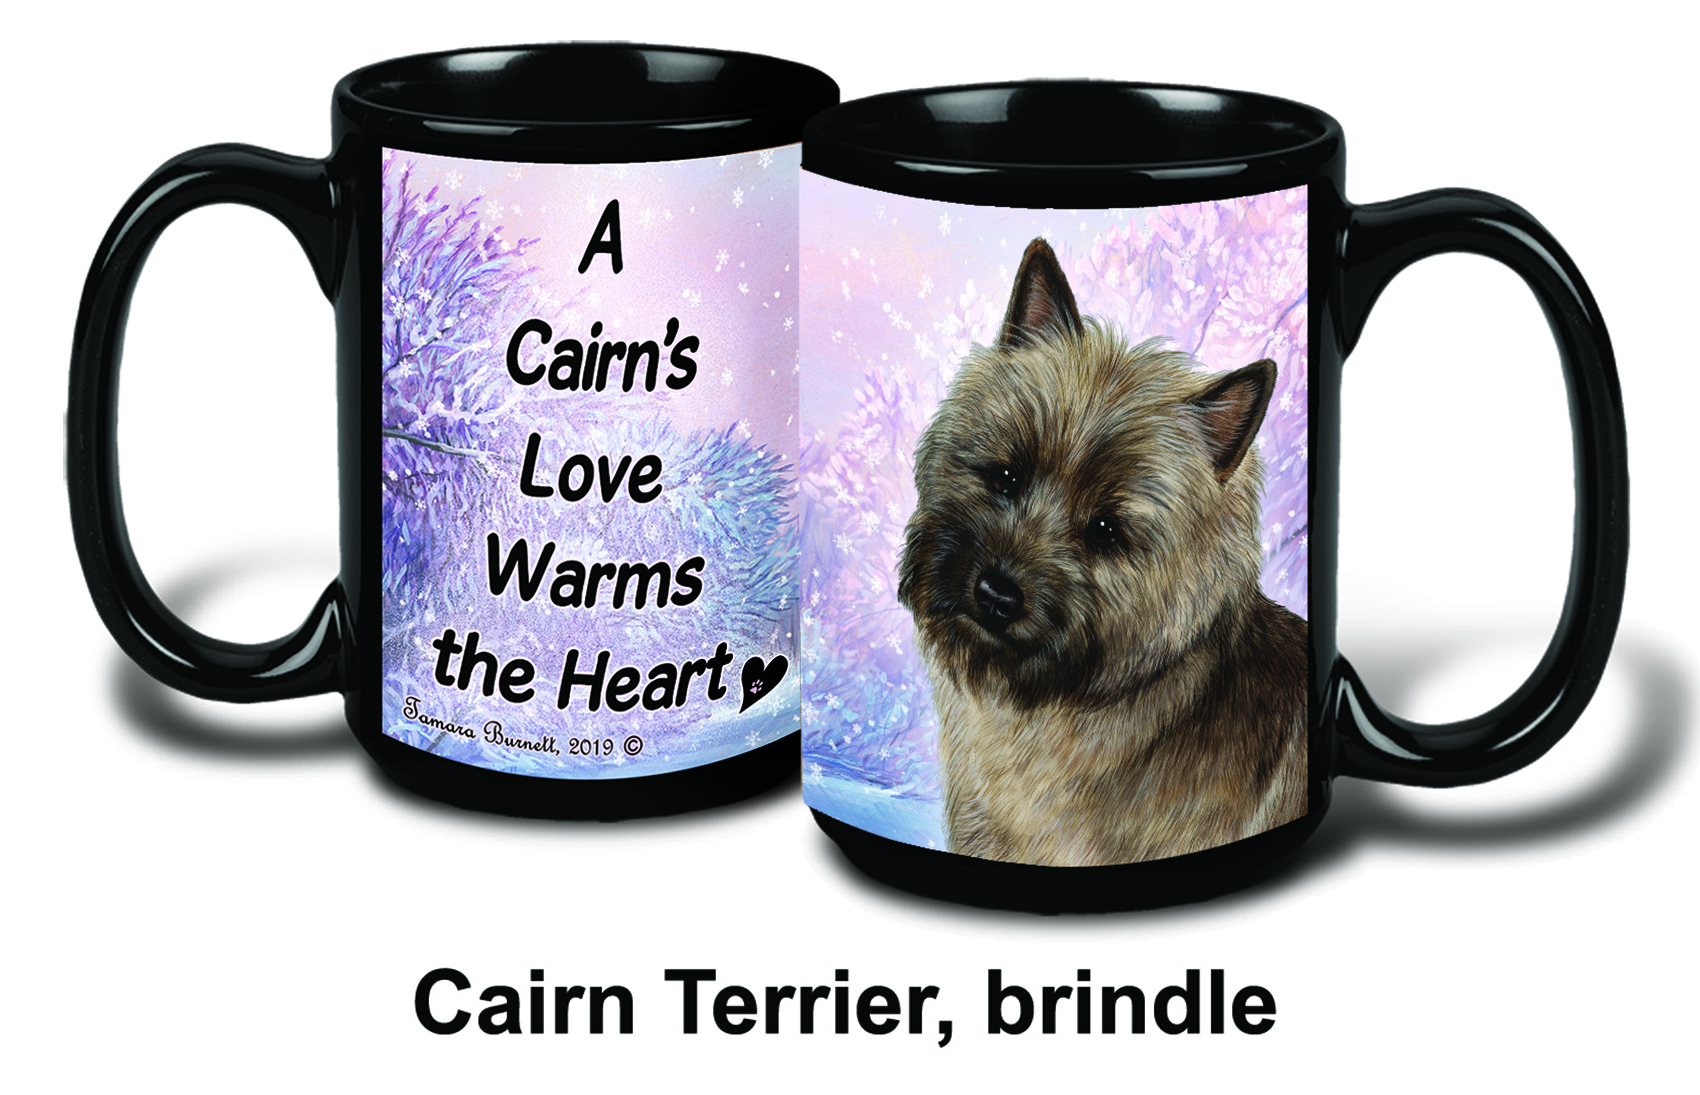 Cairn Terrier Brindle Winter Mugs image